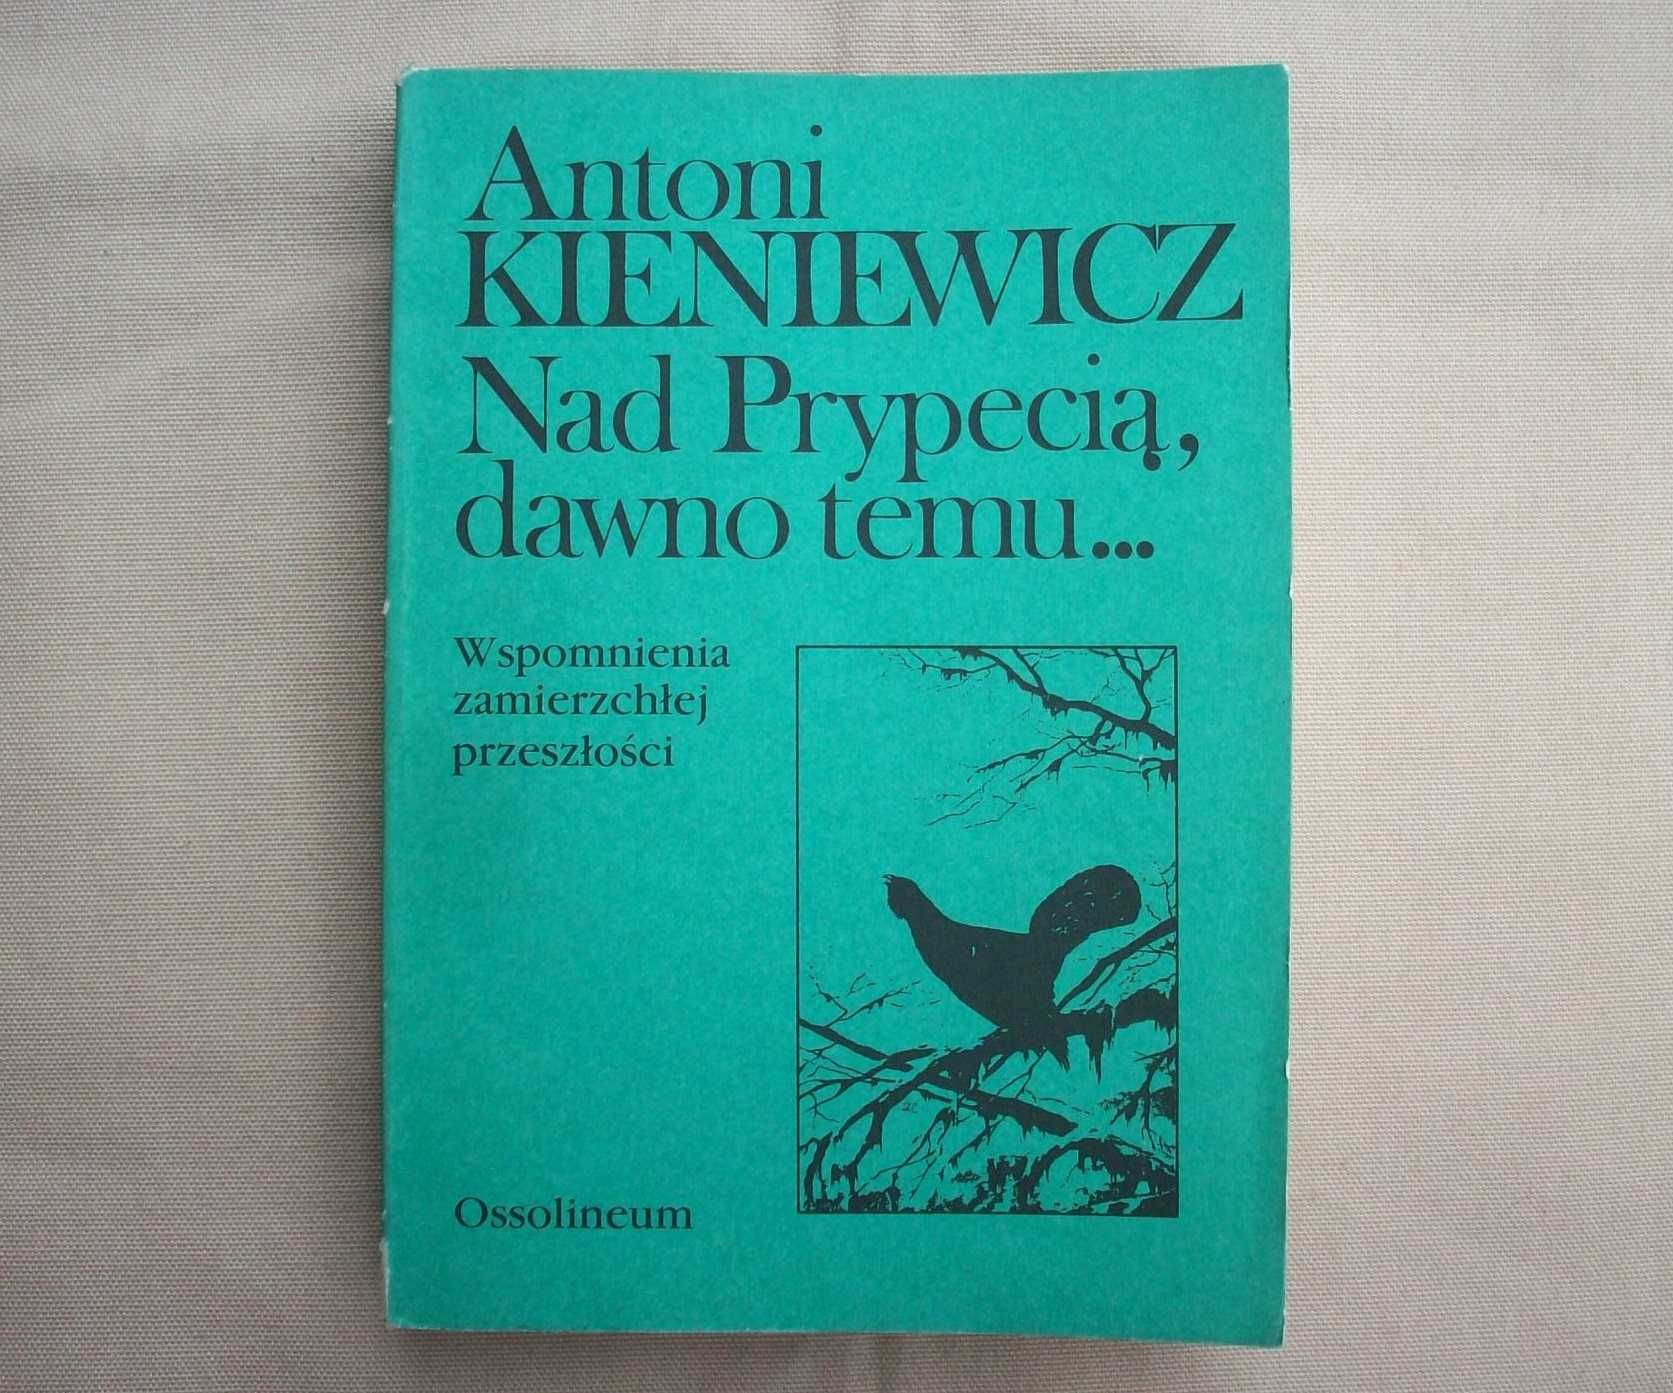 Nad Prypecią dawno temu... A.Kieniewicz, 1989.